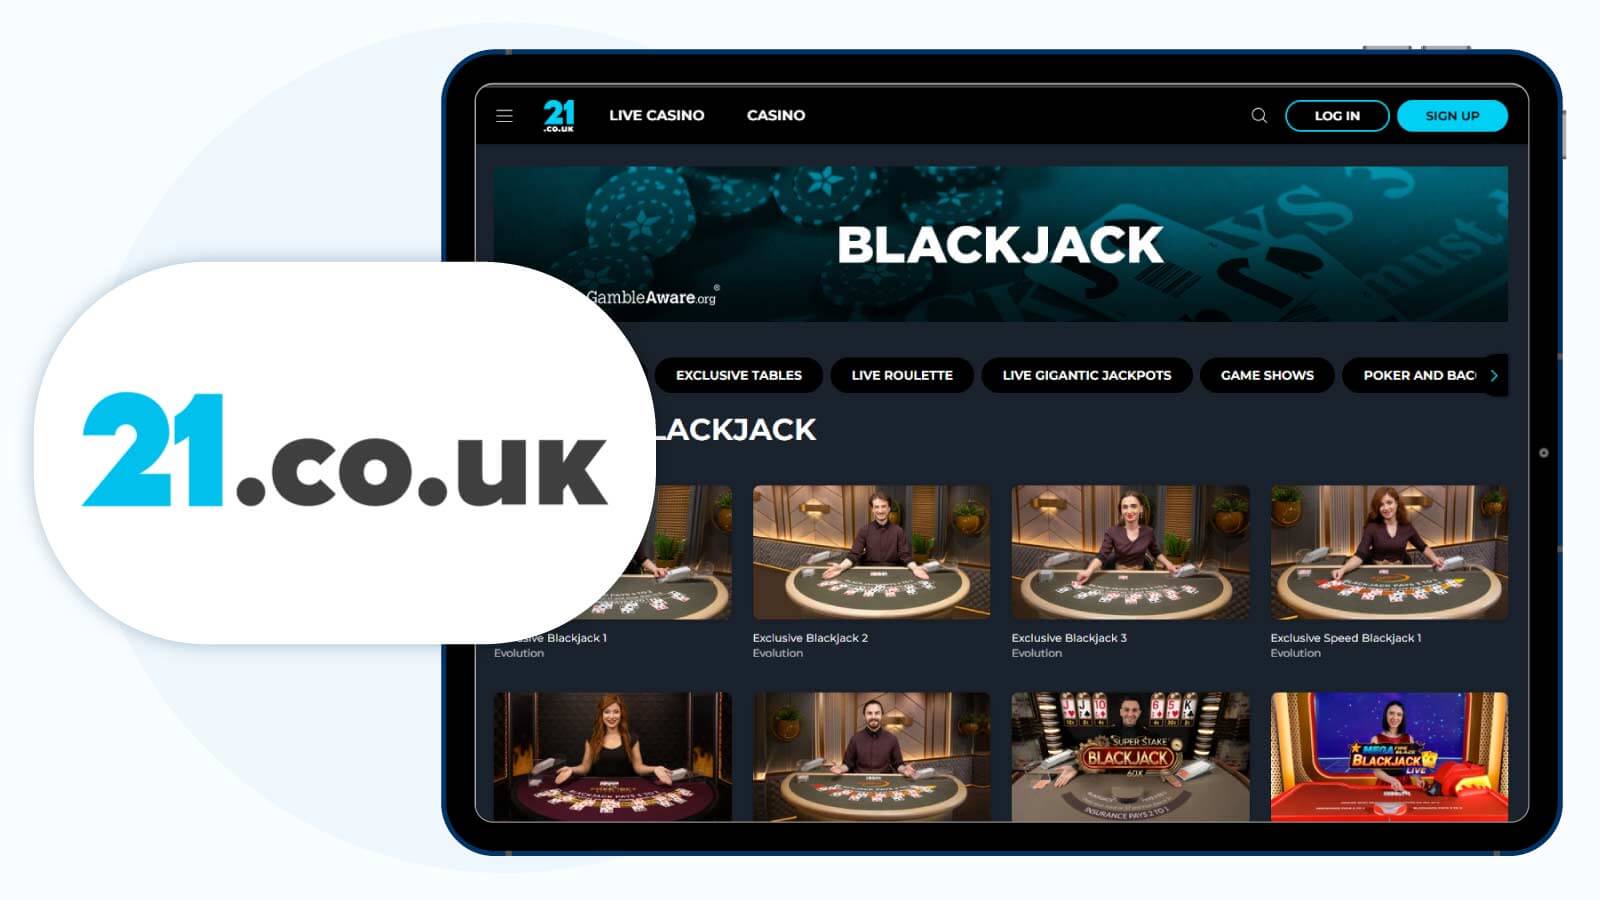 100% up to £50 and £6 Live Chips at 21.co.uk – Best Live Blackjack Bonus from Evolution